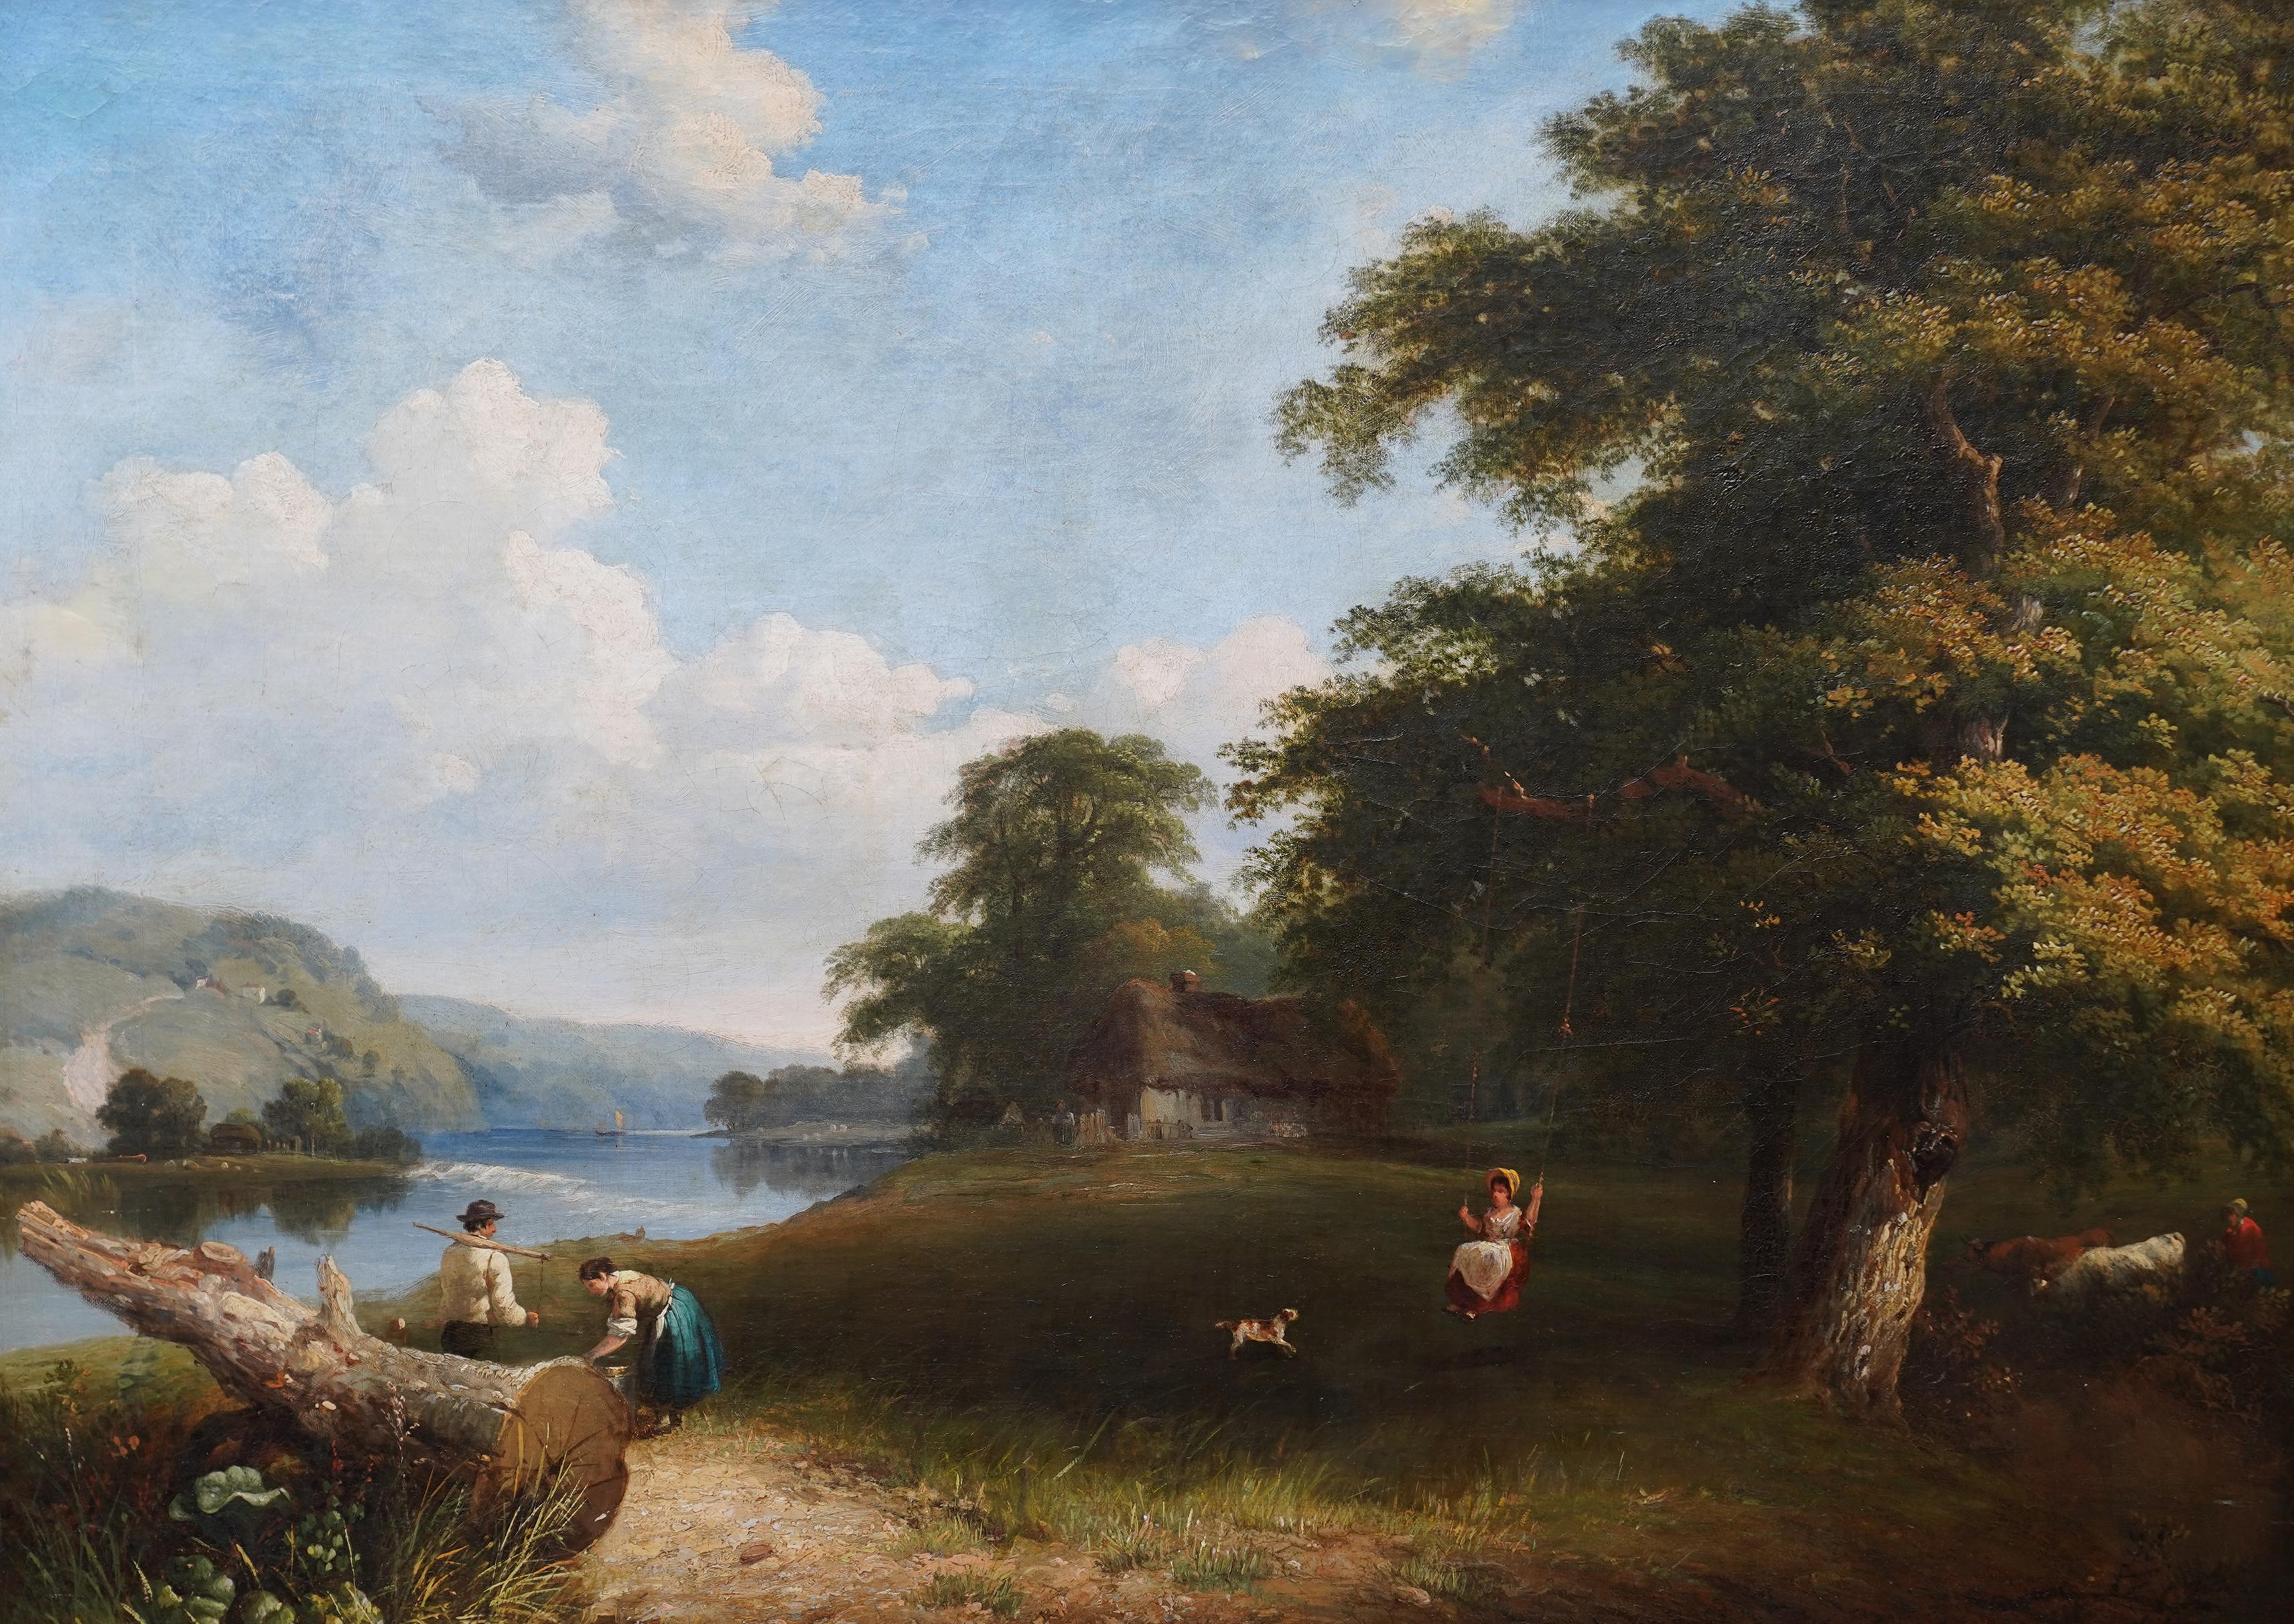 Thames Pangbourne Landscape - British Victorian art riverscape oil painting 2